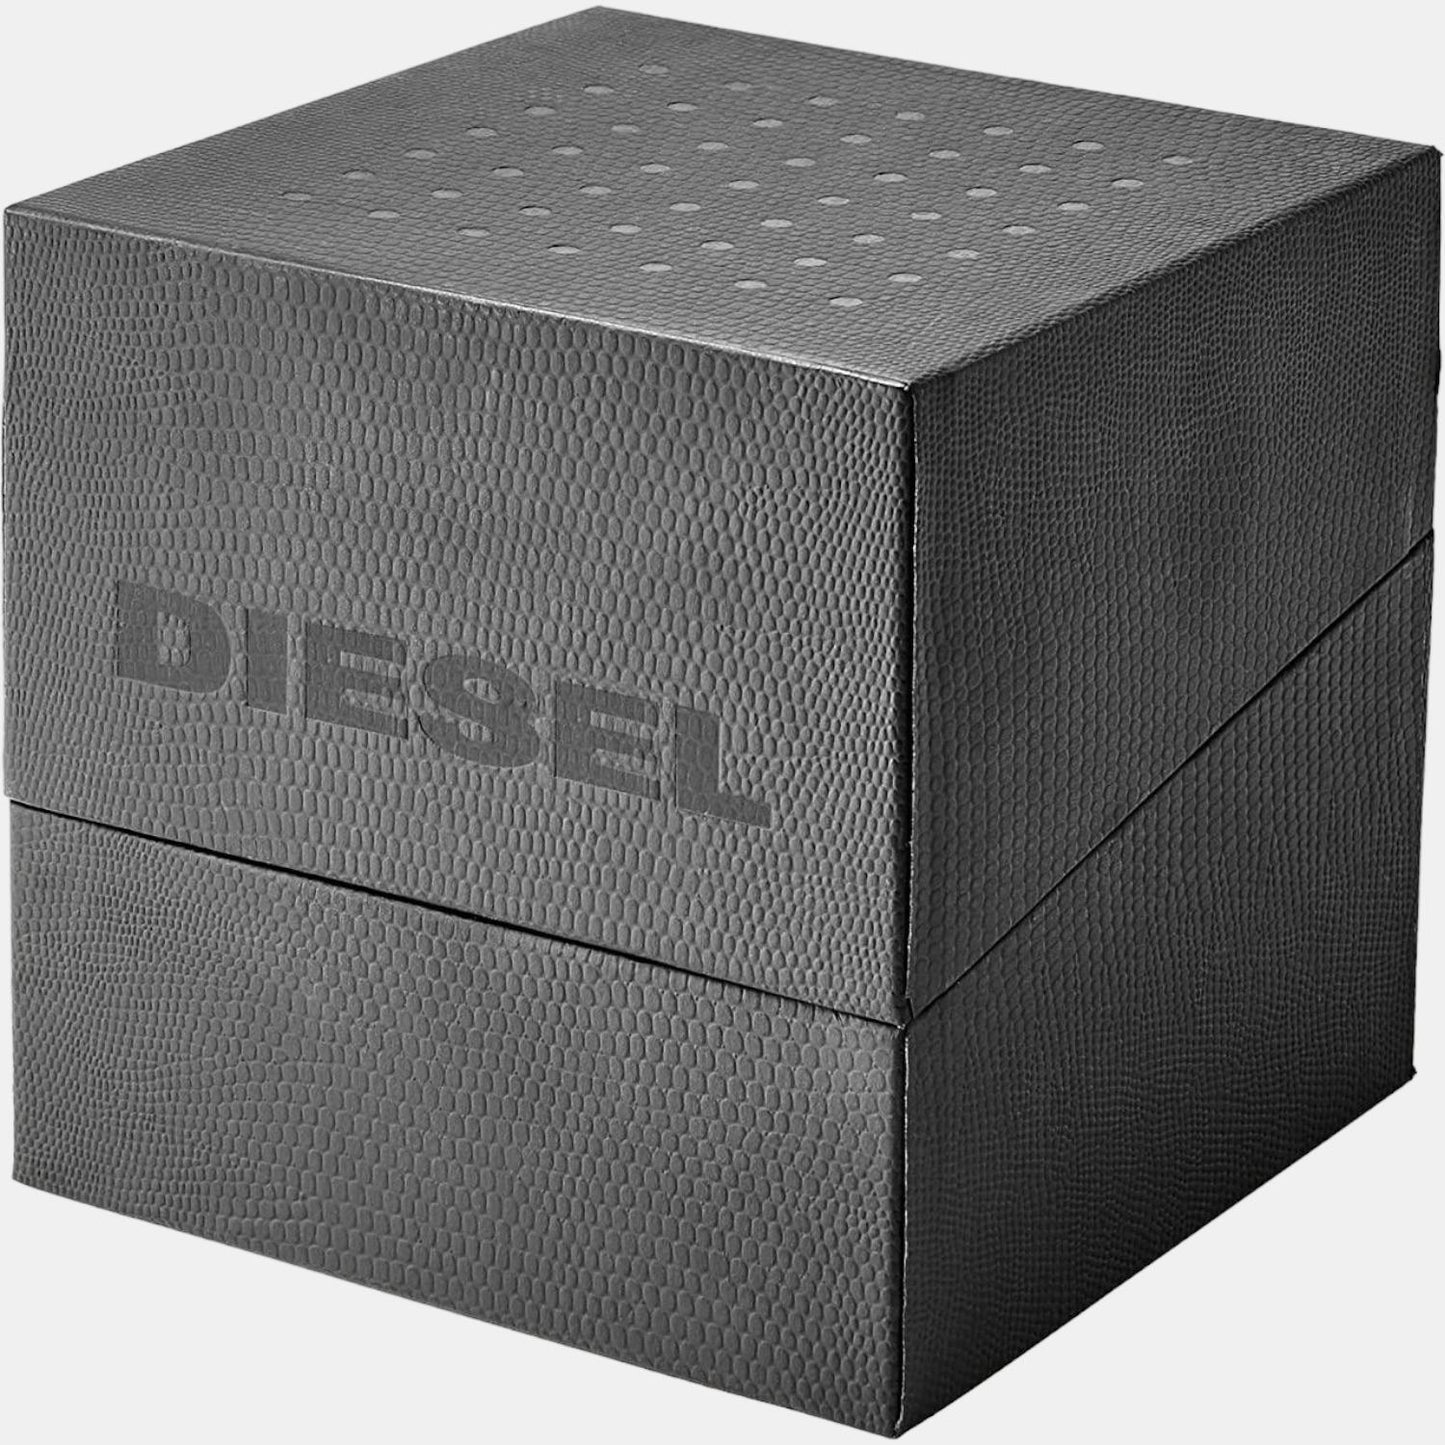 diesel-stainless-steel-black-analog-men-watch-dz4519